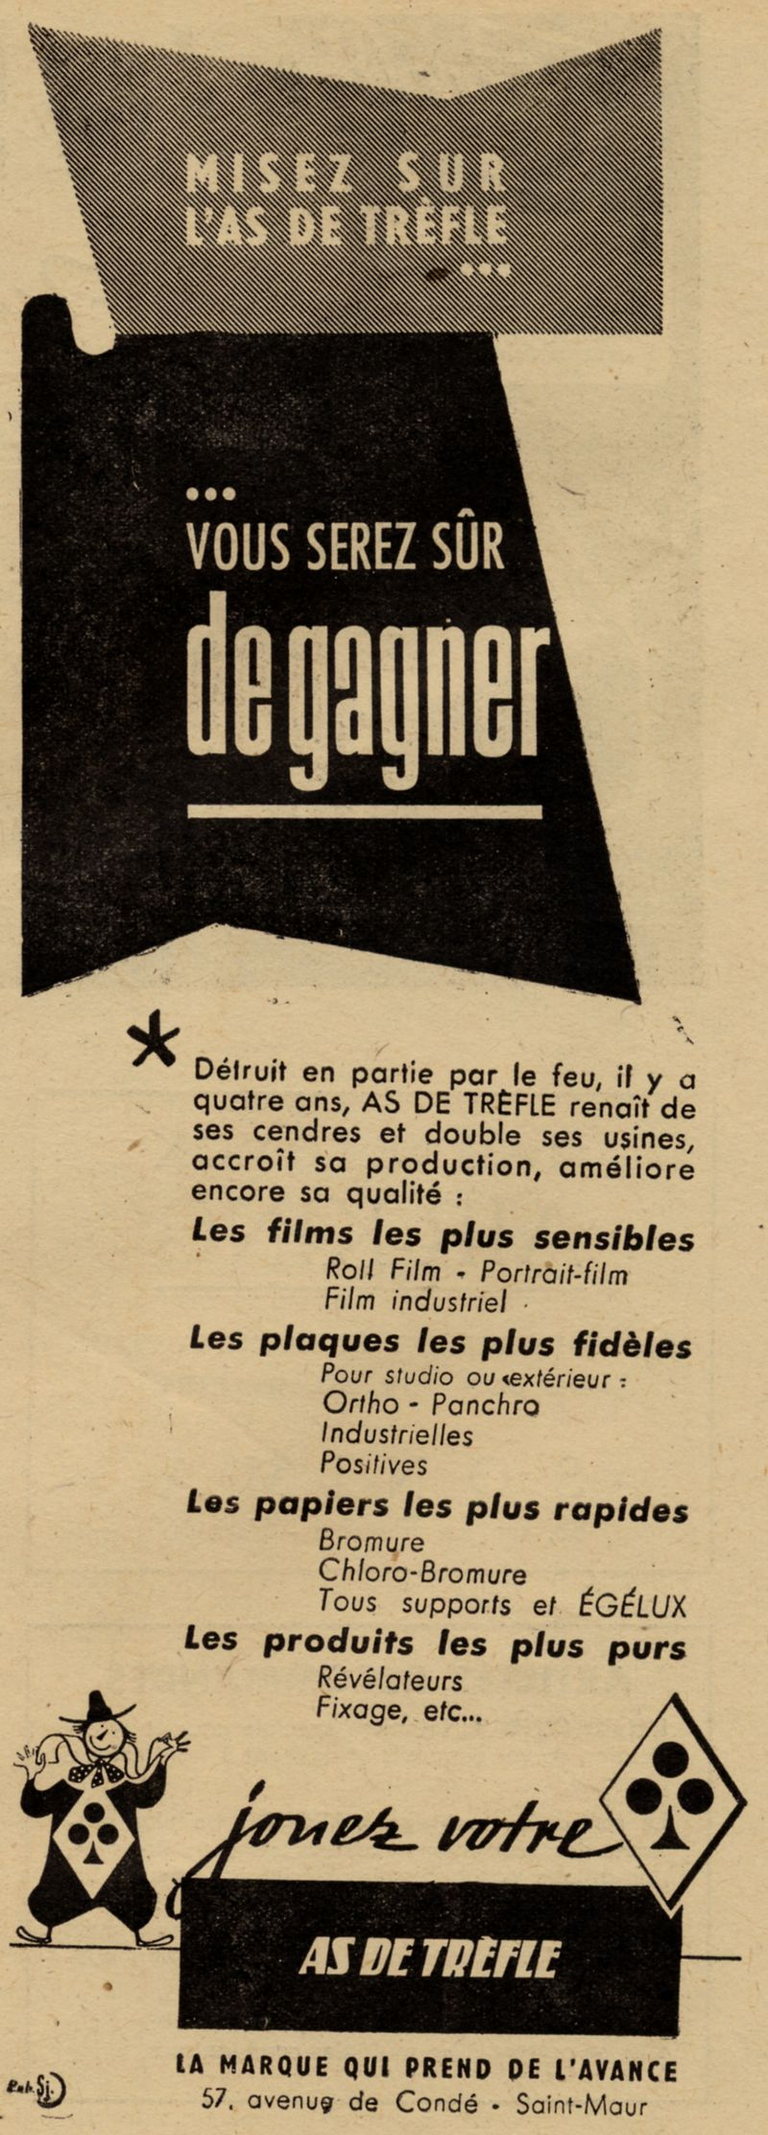 As de Trèfle - Plaques, Pellicules, Papiers, Produits - 1948